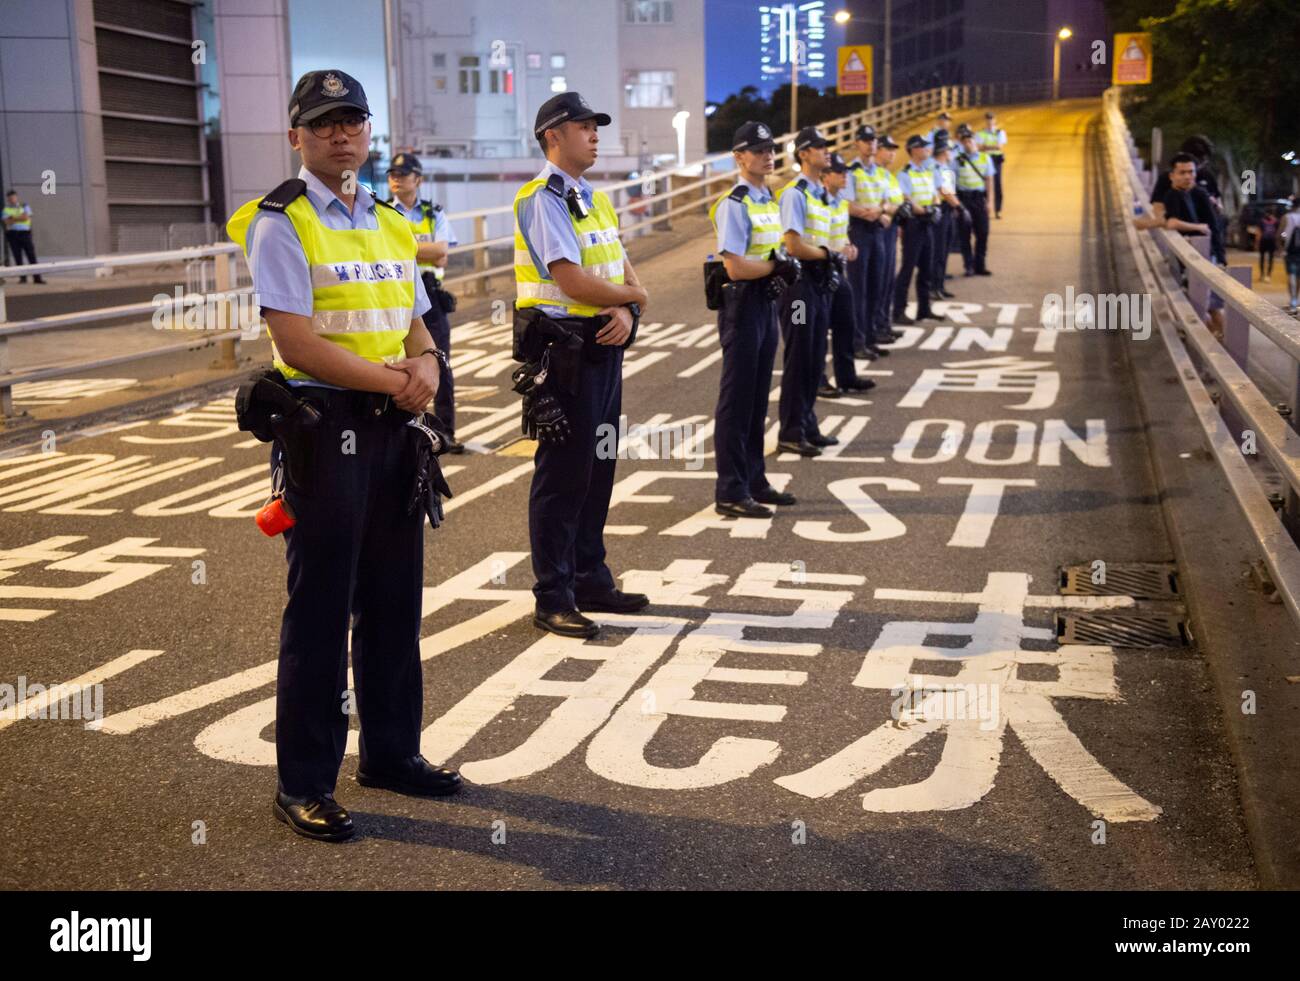 Hongkong, China: 16. Juni 2019. Polizist legt sich die Hand auf eine Dose Pfefferspray, bereit, sollte ein Protestler außer Dienst treten.Demonstranten marschieren durch Wan Stockfoto